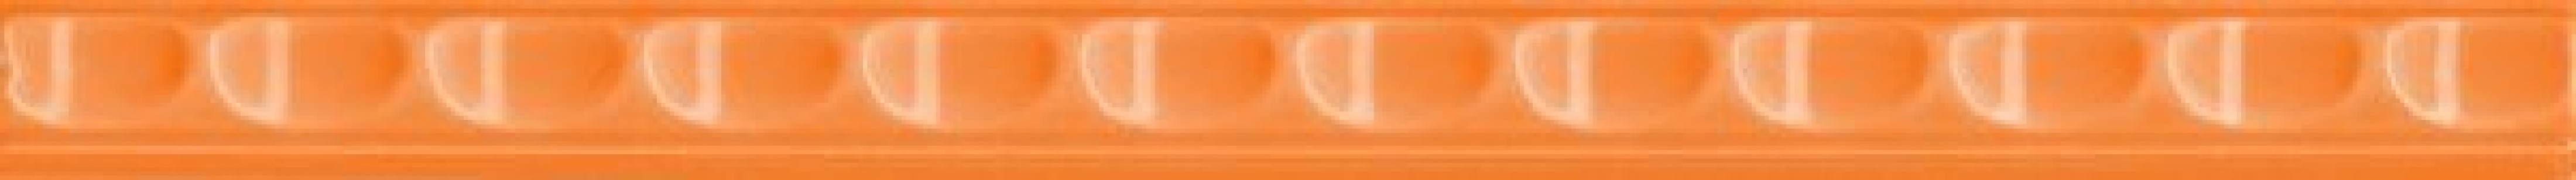 Бордюр Нефрит-Керамика Кураж-2 Трамплин оранжевый 1.3x20 30-173-50-03-40